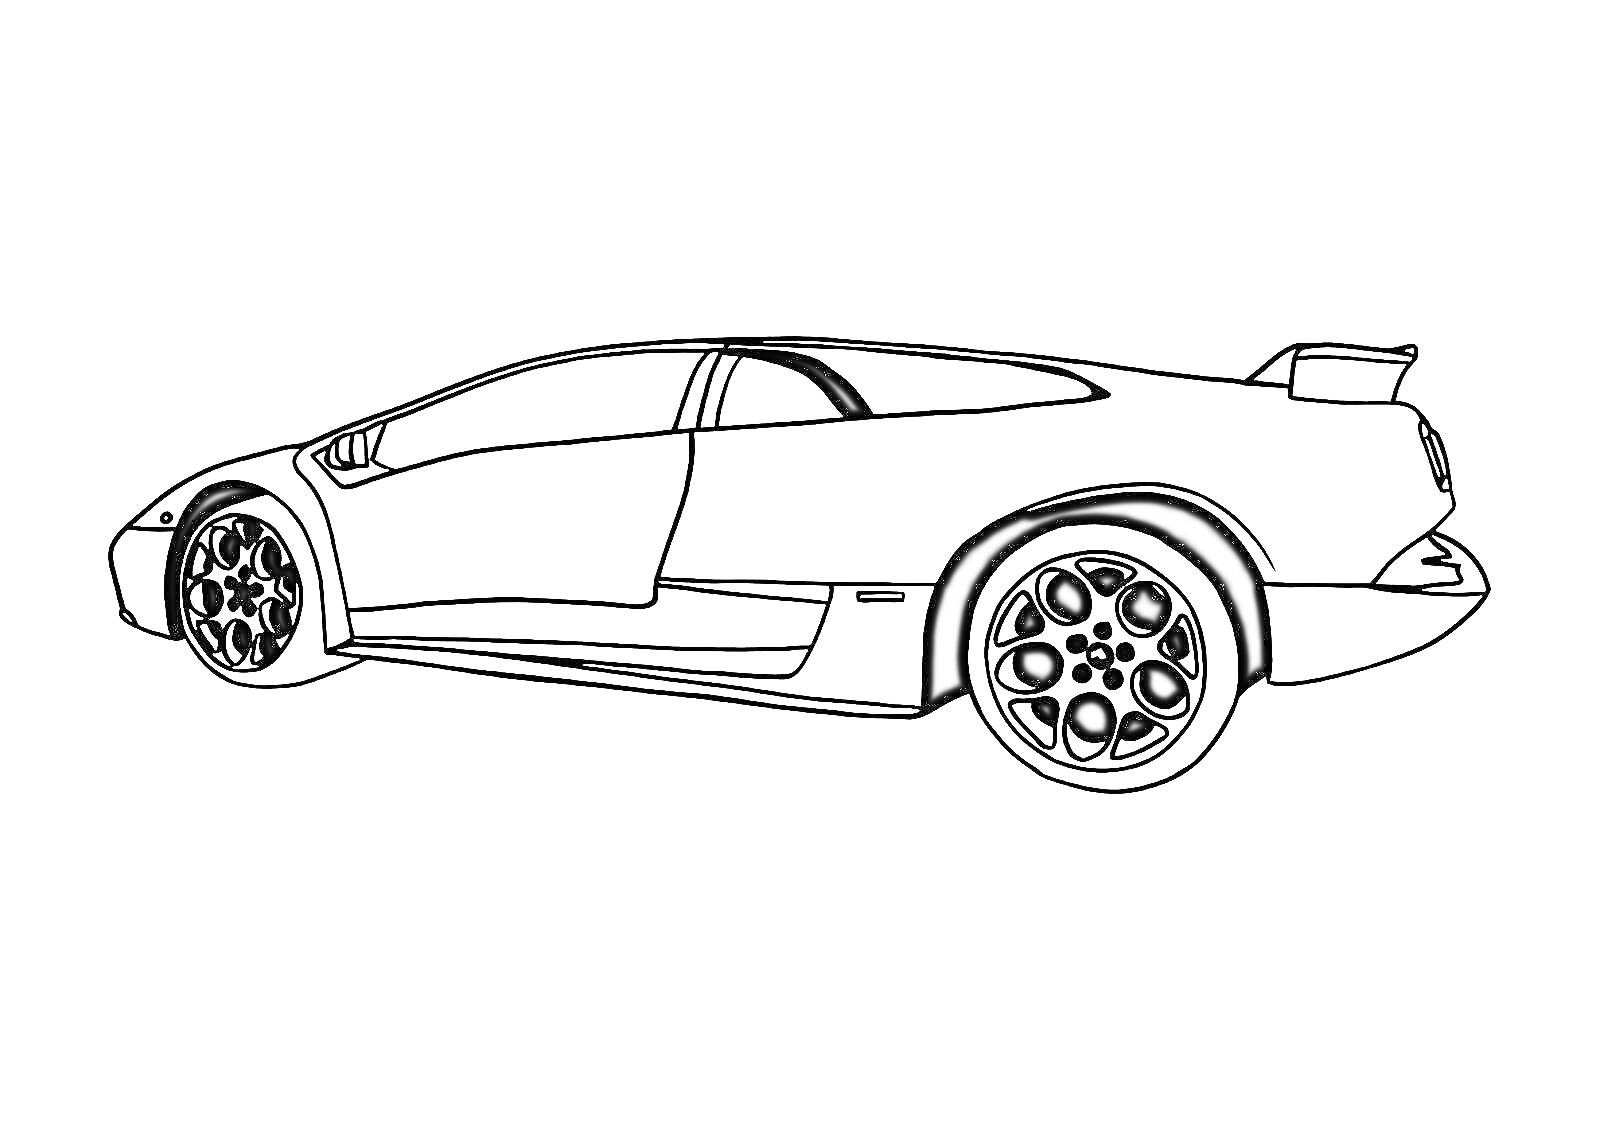 Спортивный автомобиль Ламборджини с характерным спойлером, колёсами и аэродинамическими элементами